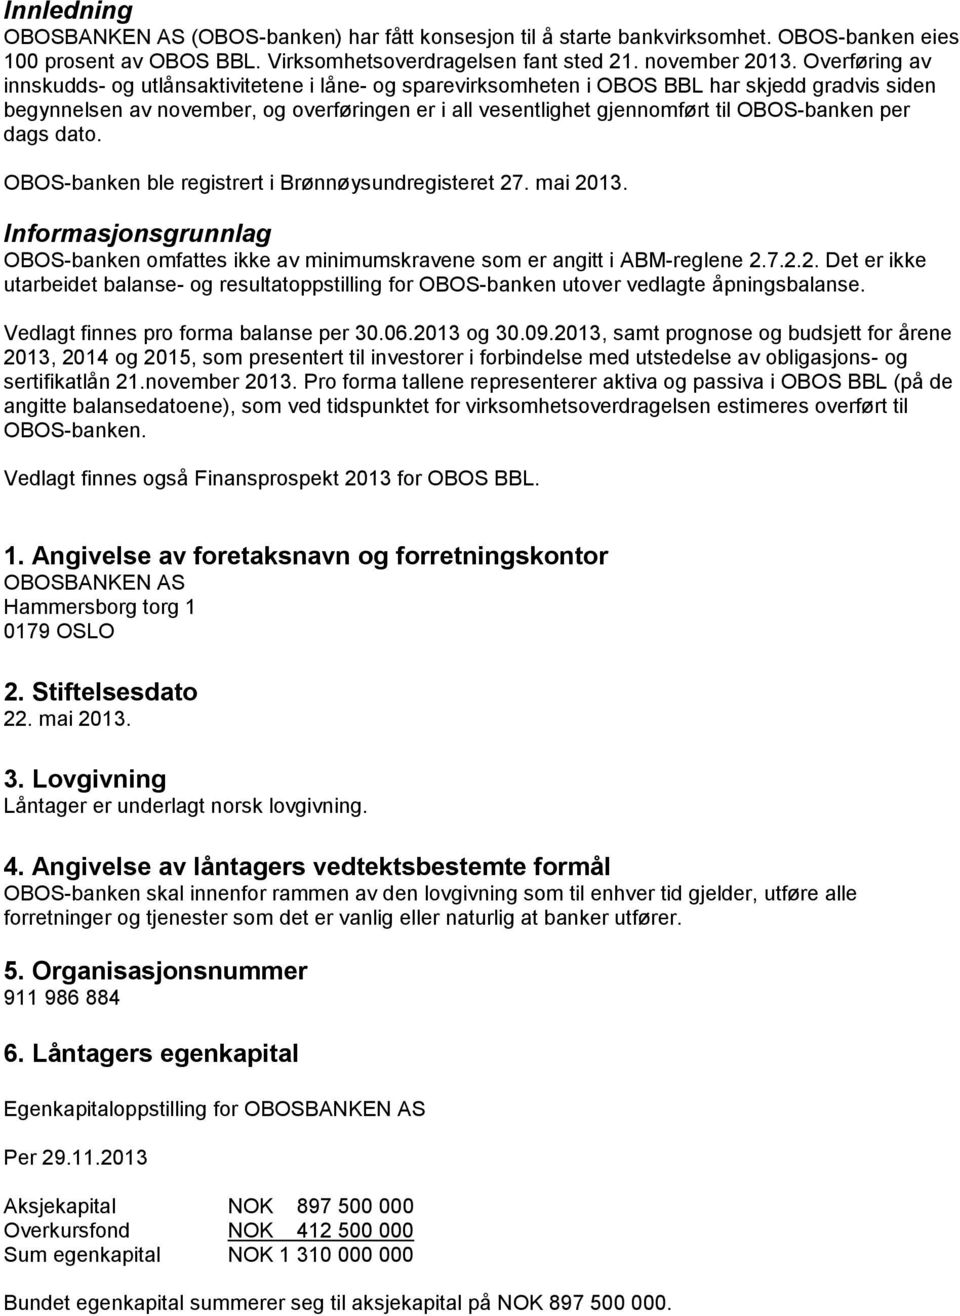 OBOS-banken per dags dato. OBOS-banken ble registrert i Brønnøysundregisteret 27. mai 2013. Informasjonsgrunnlag OBOS-banken omfattes ikke av minimumskravene som er angitt i ABM-reglene 2.7.2.2. Det er ikke utarbeidet balanse- og resultatoppstilling for OBOS-banken utover vedlagte åpningsbalanse.